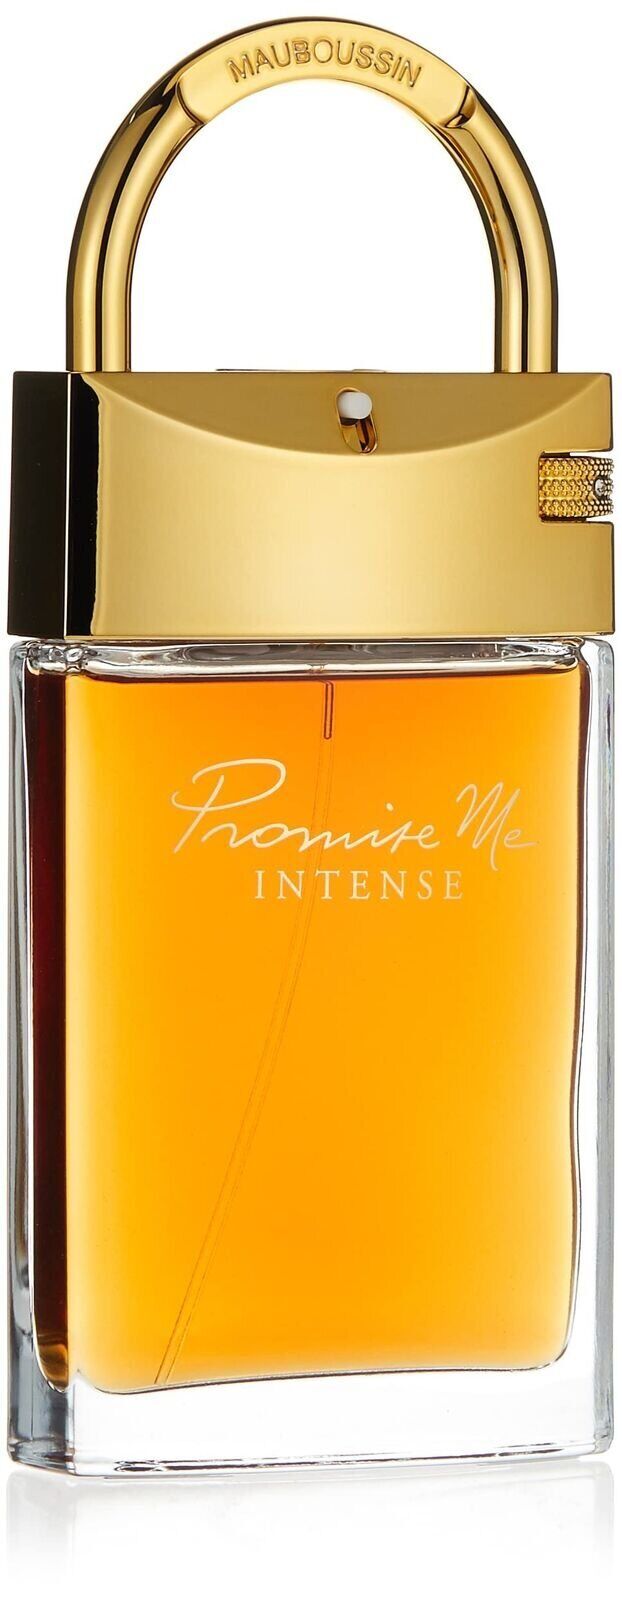 Parfums Promise Me Intense de la marque Mauboussin pour femme 90 ml